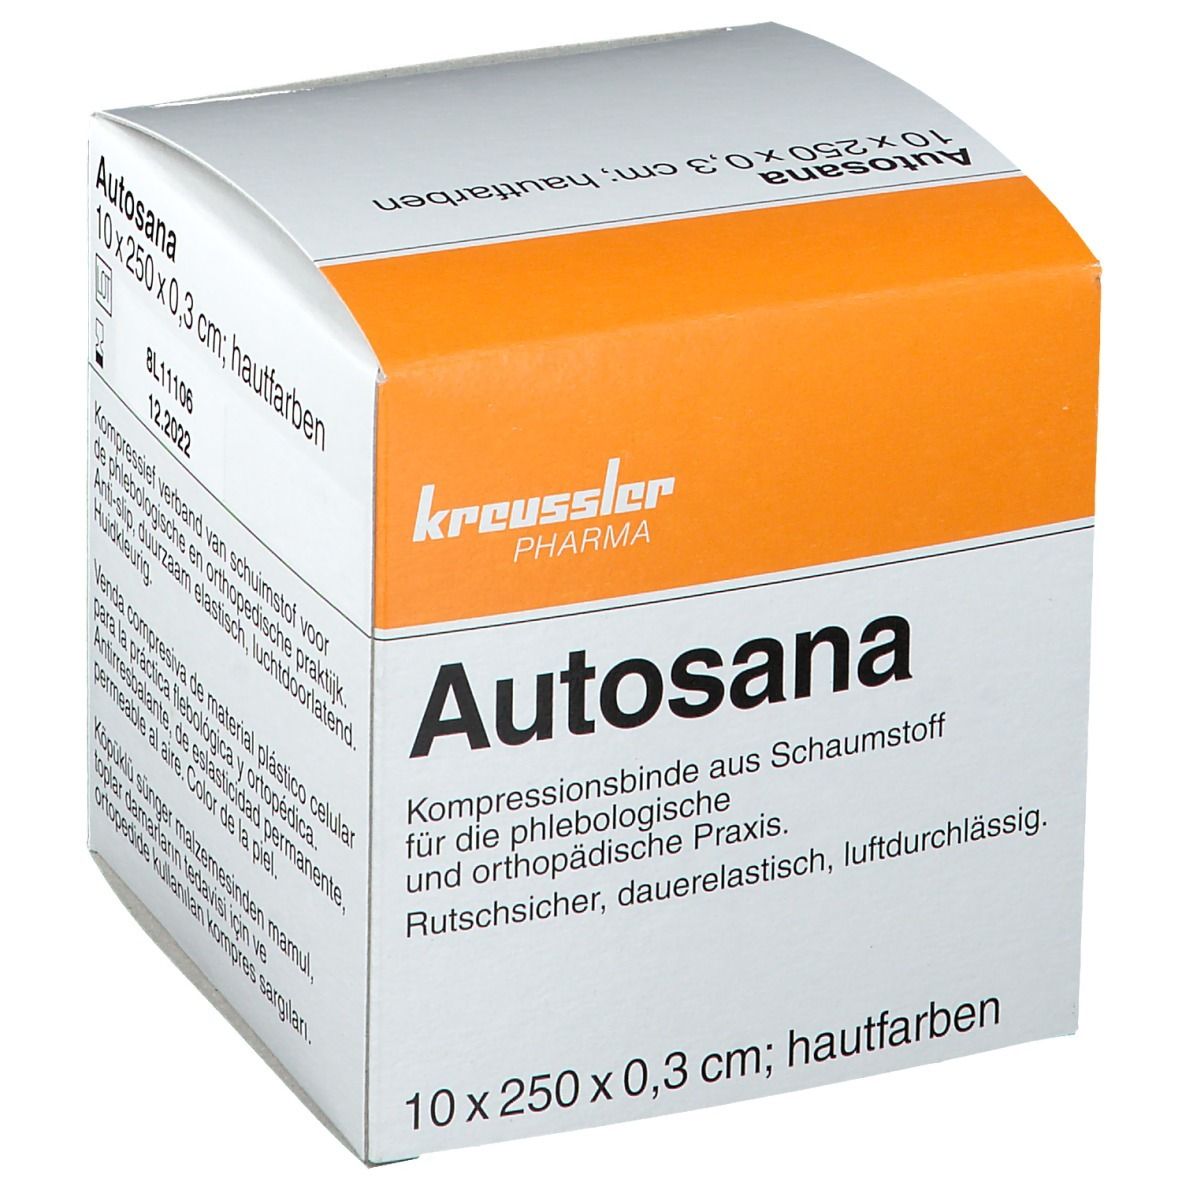 Autosana Kompressionsbinde aus Schaumstoff 10 cm x 2,5 m x 0,3 cm hautfarbend